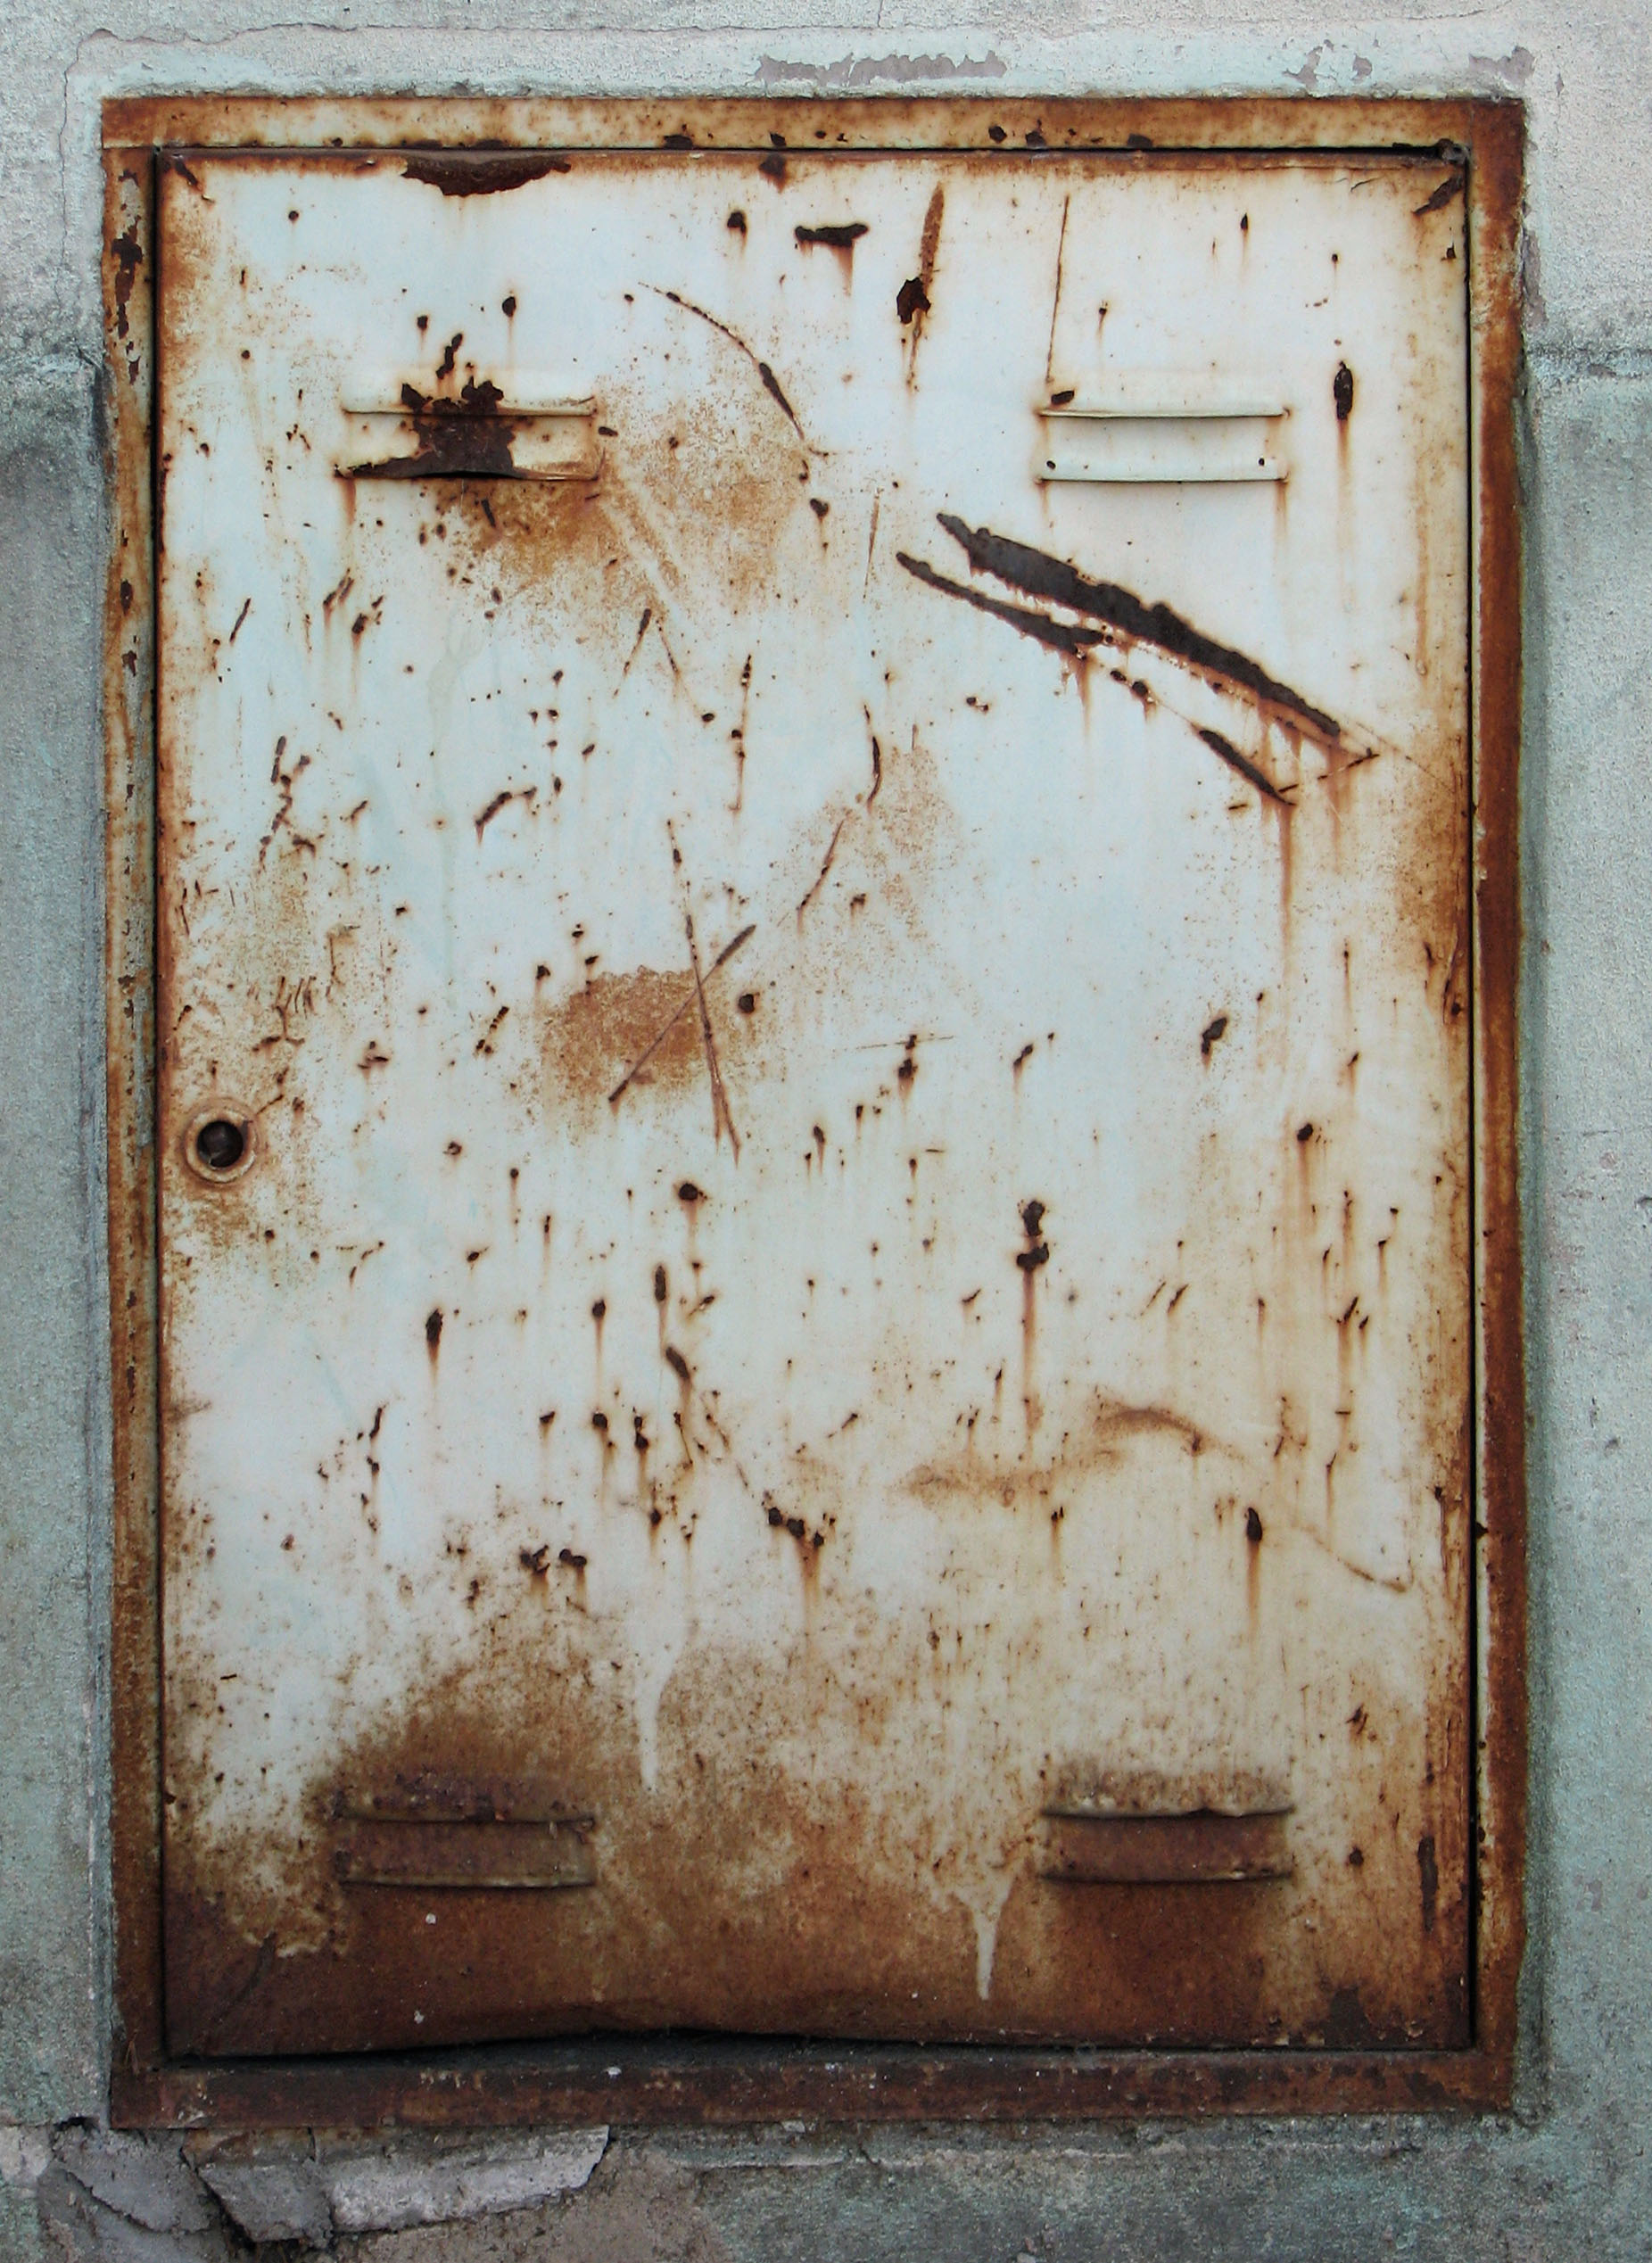 Sheet metal door rust фото 107